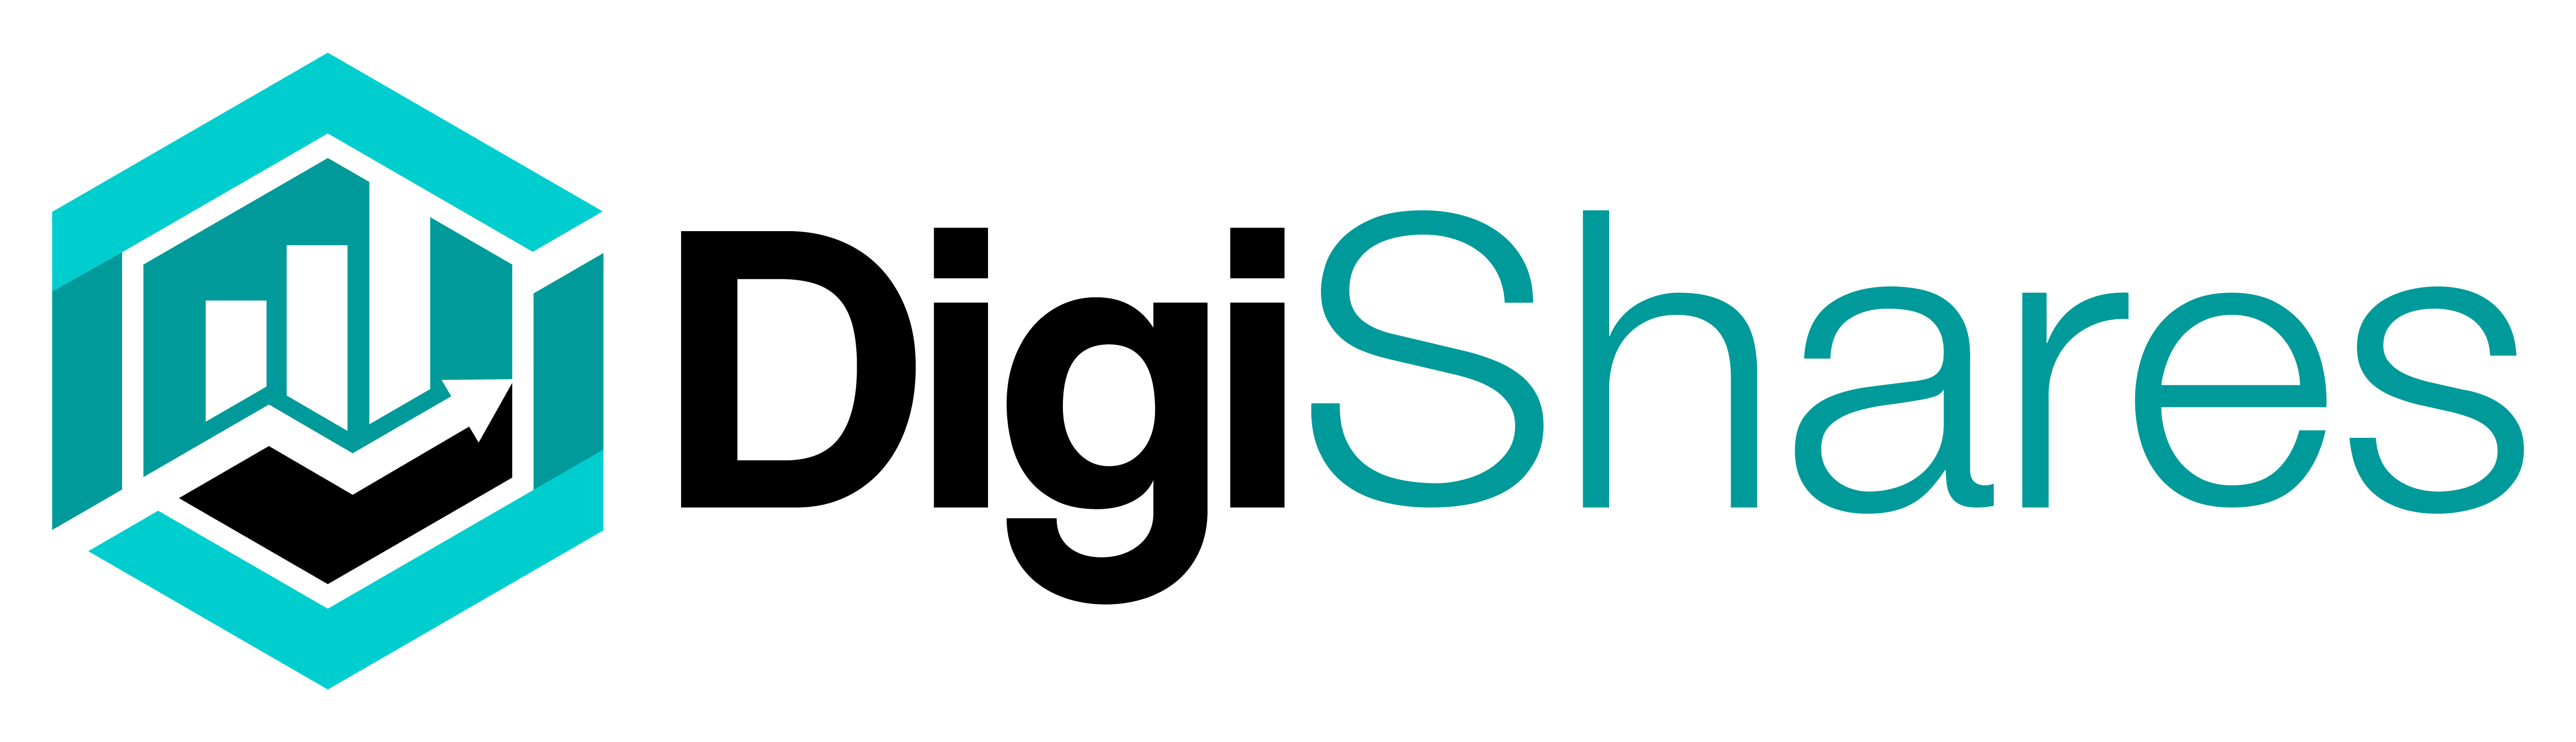 DigiShares logo